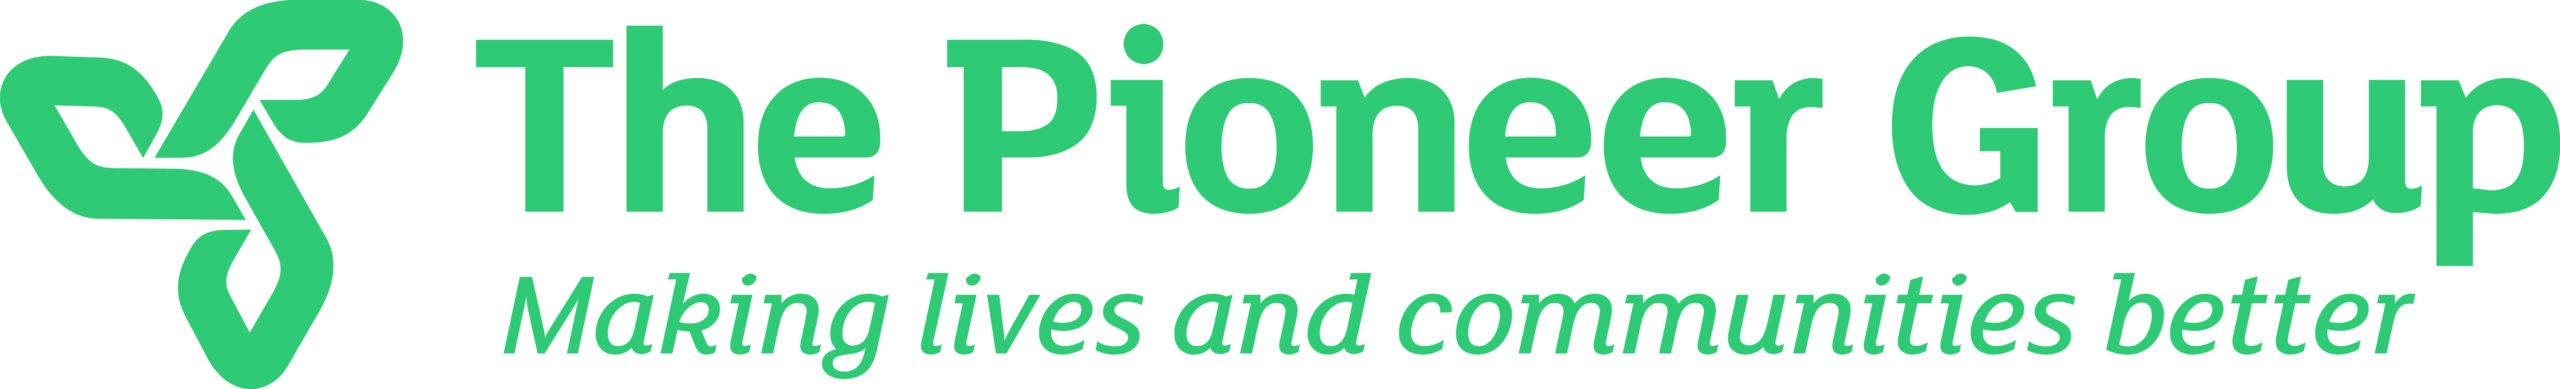 The Pioneer Group Logo Dark Green (Strapline)